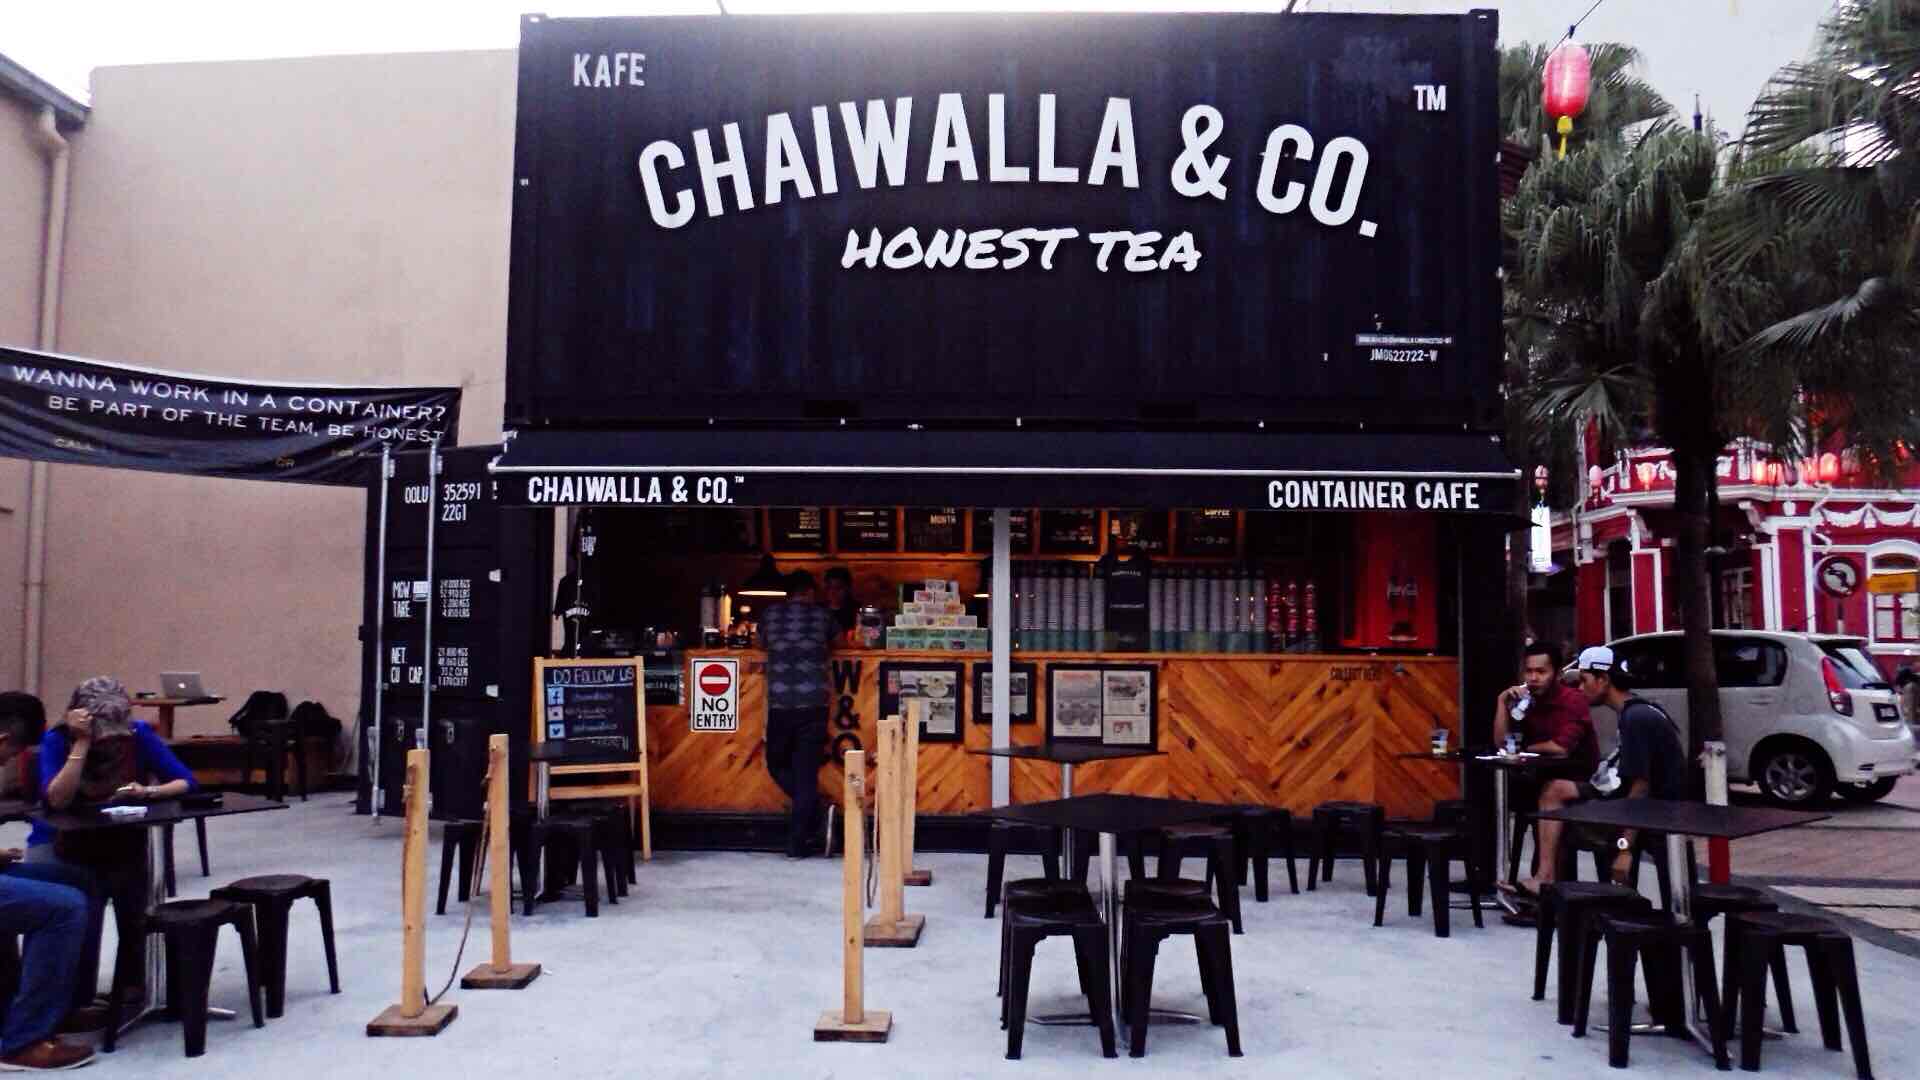 Chaiwalla & Co. Johor Bahru Malaysia - AspirantSG